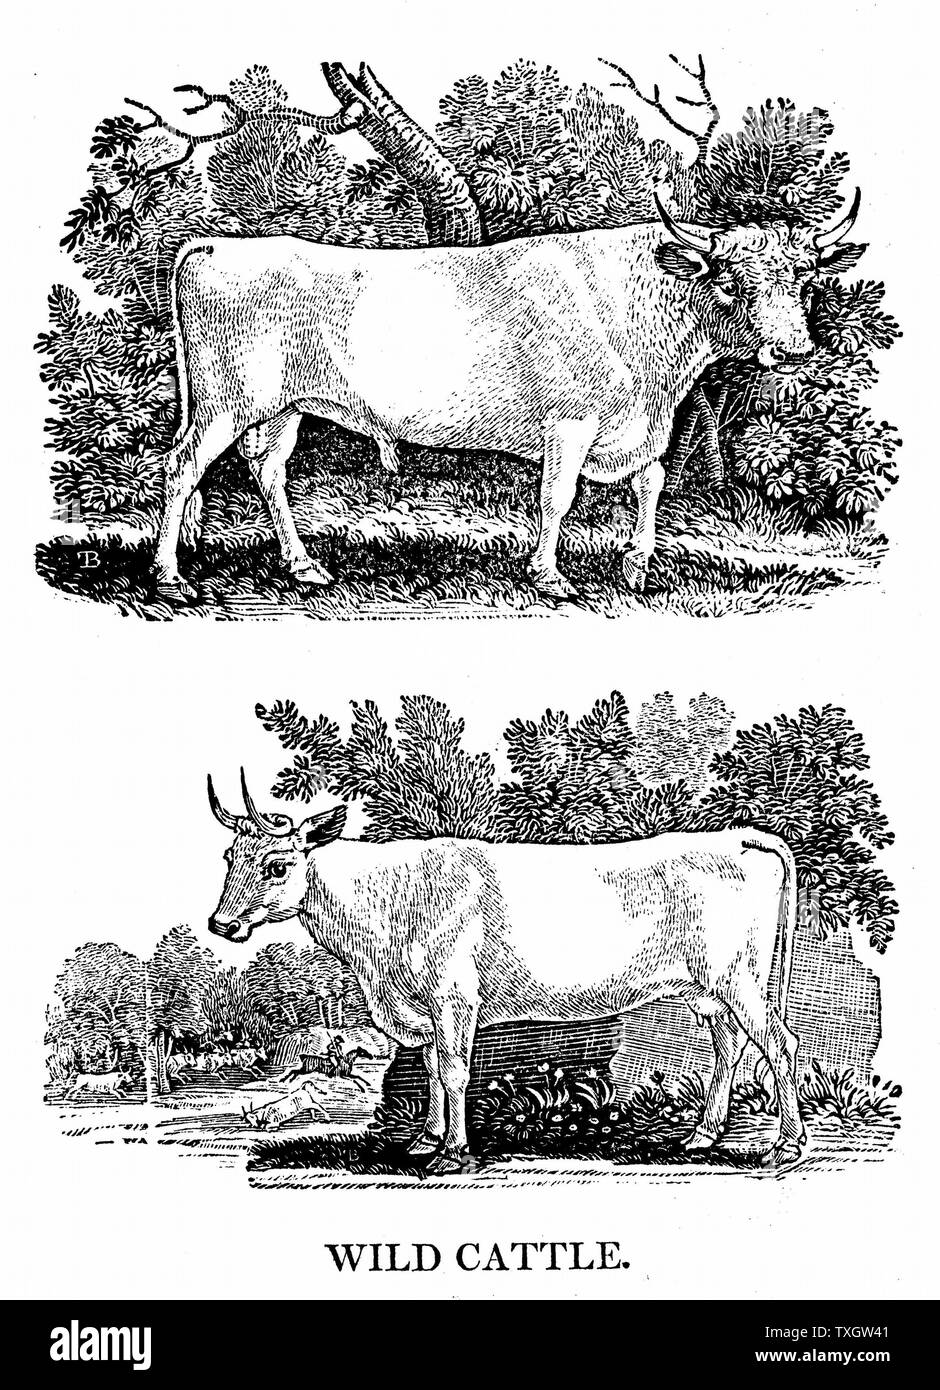 Britische Wild oder Park Rinder von Thomas Bewick' eine allgemeine Geschichte der Vierbeiner", Newcastle-upon-Tyne, 1790. Uralte Rasse überleben in ein paar kleinen Herden in Großbritannien durch die vor Jahrhunderten enparked wurde. Stier und Kuh Holzstich Stockfoto